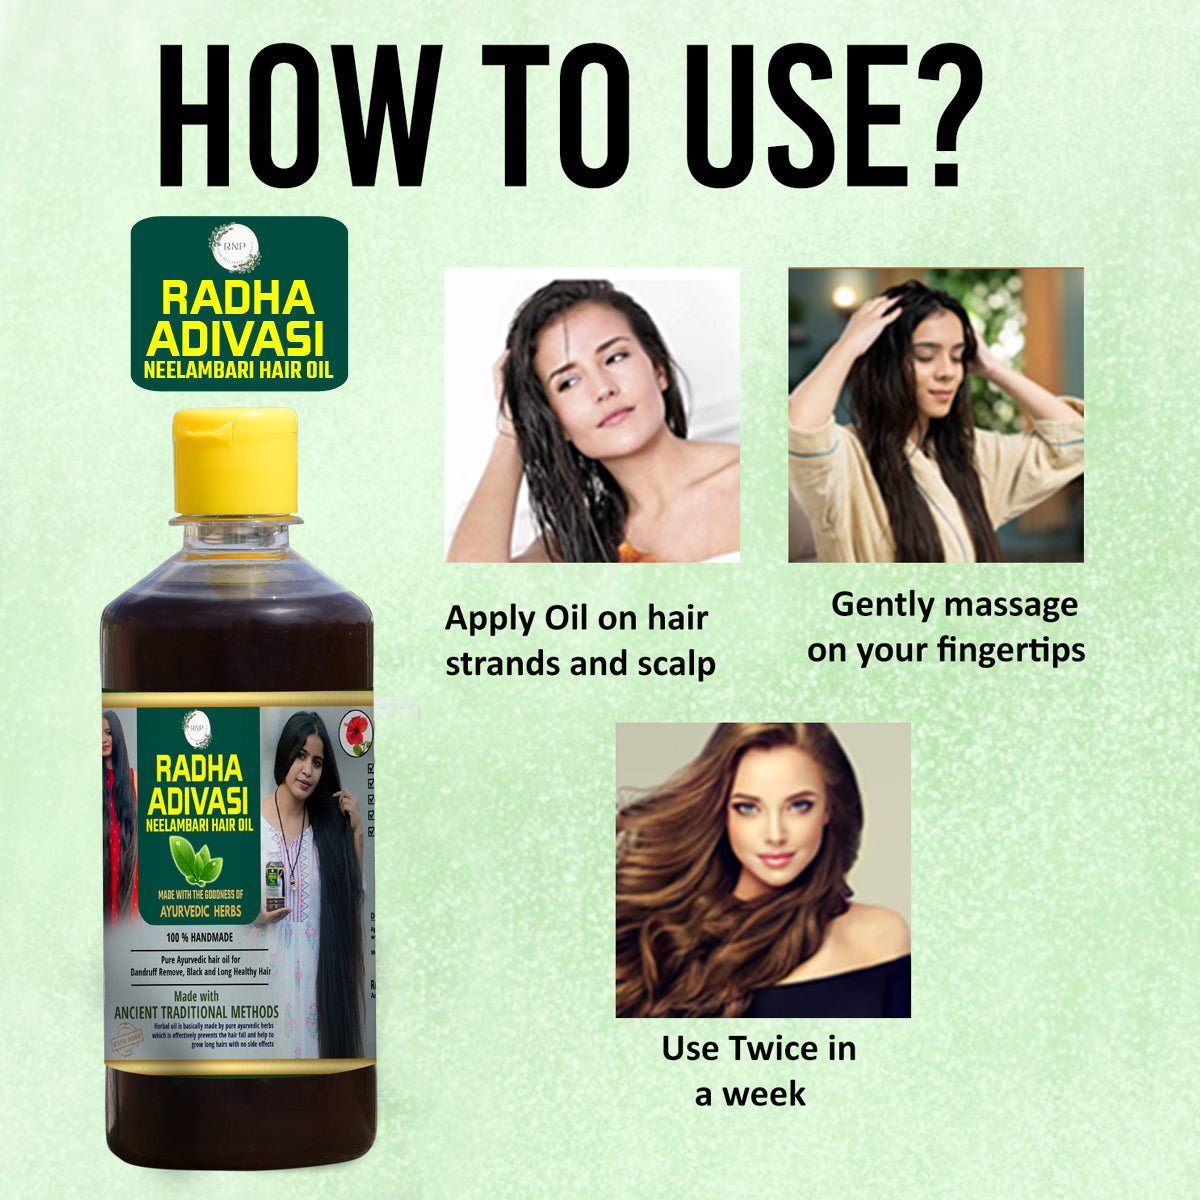 Radha adivasi neelambari hair oil [500ml]